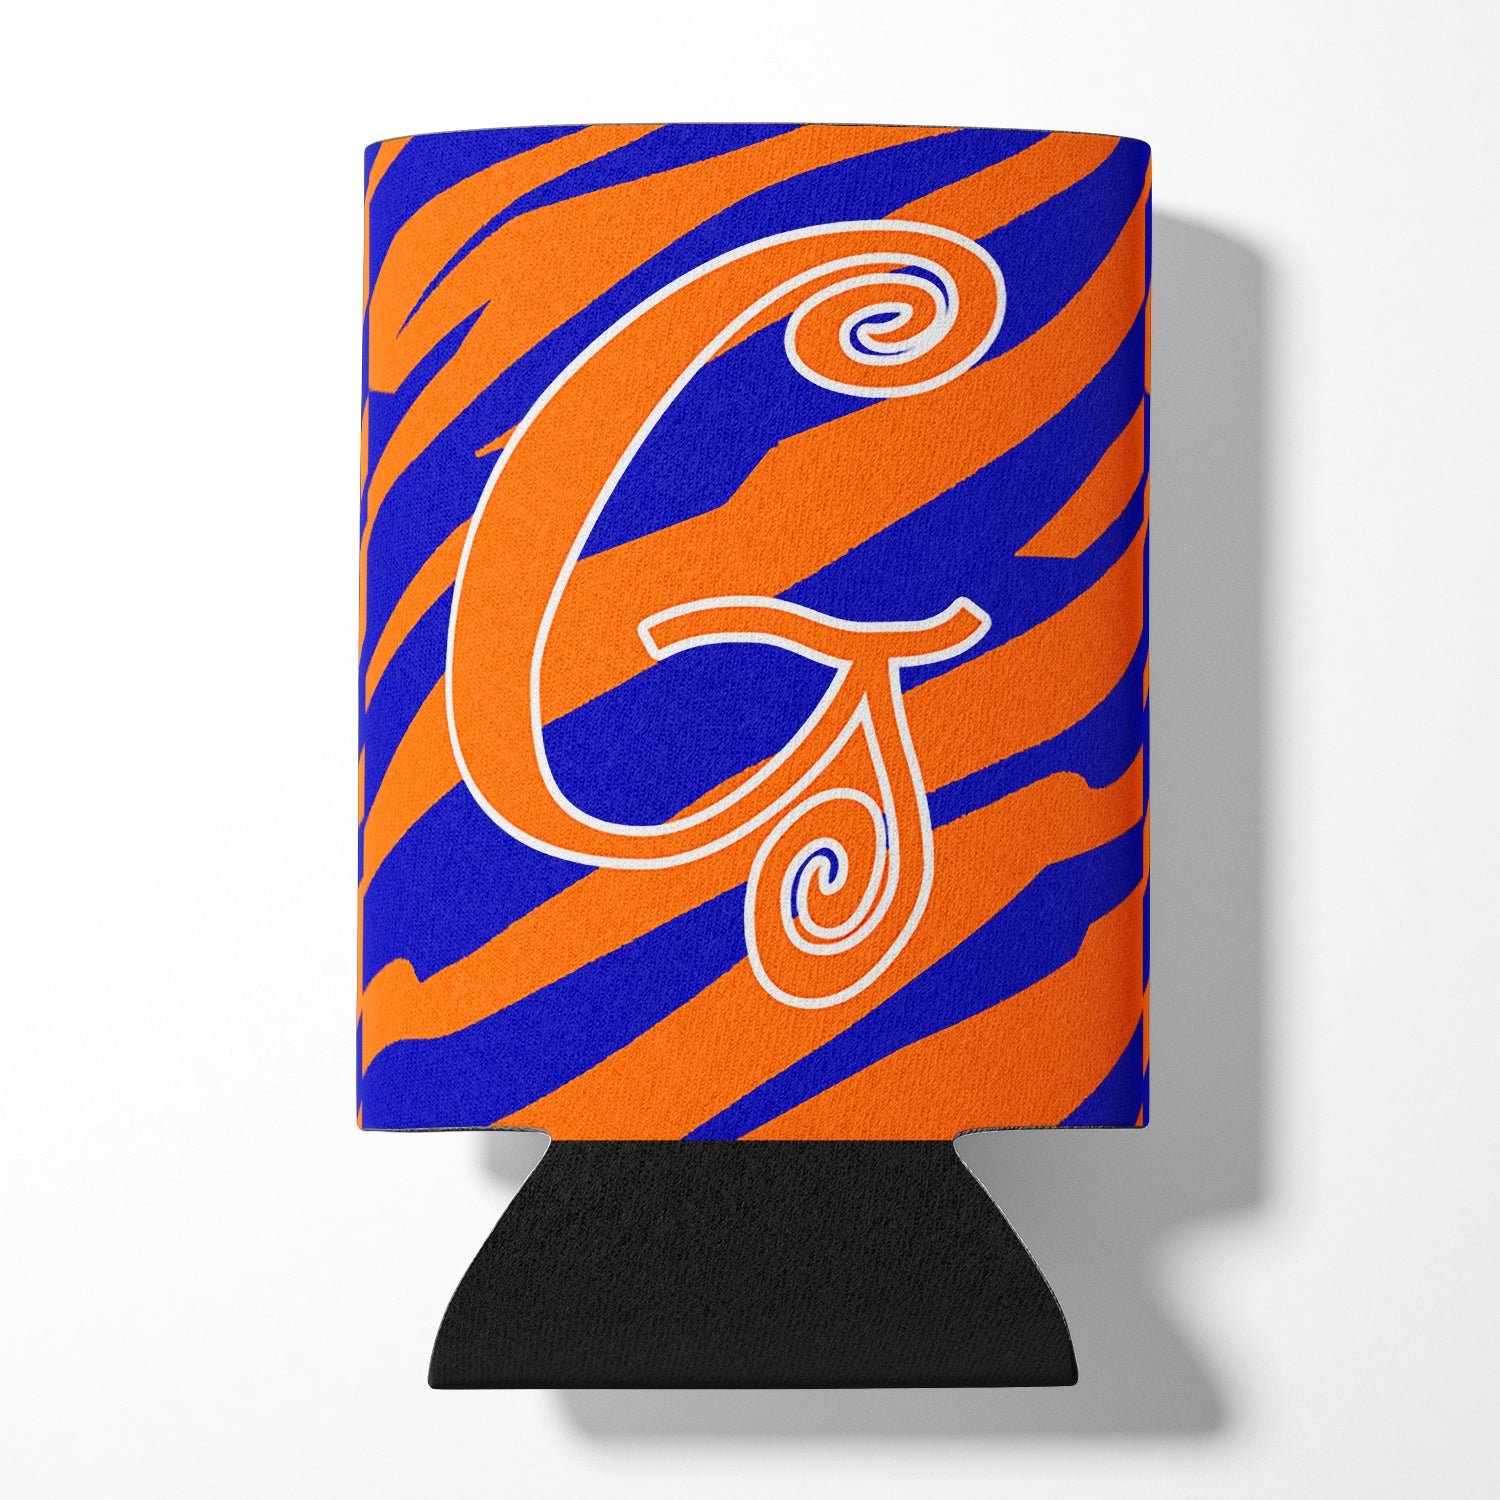 Letter G Initial Monogram - Tiger Stripe Blue and Orange Can Beverage Insulator Hugger.